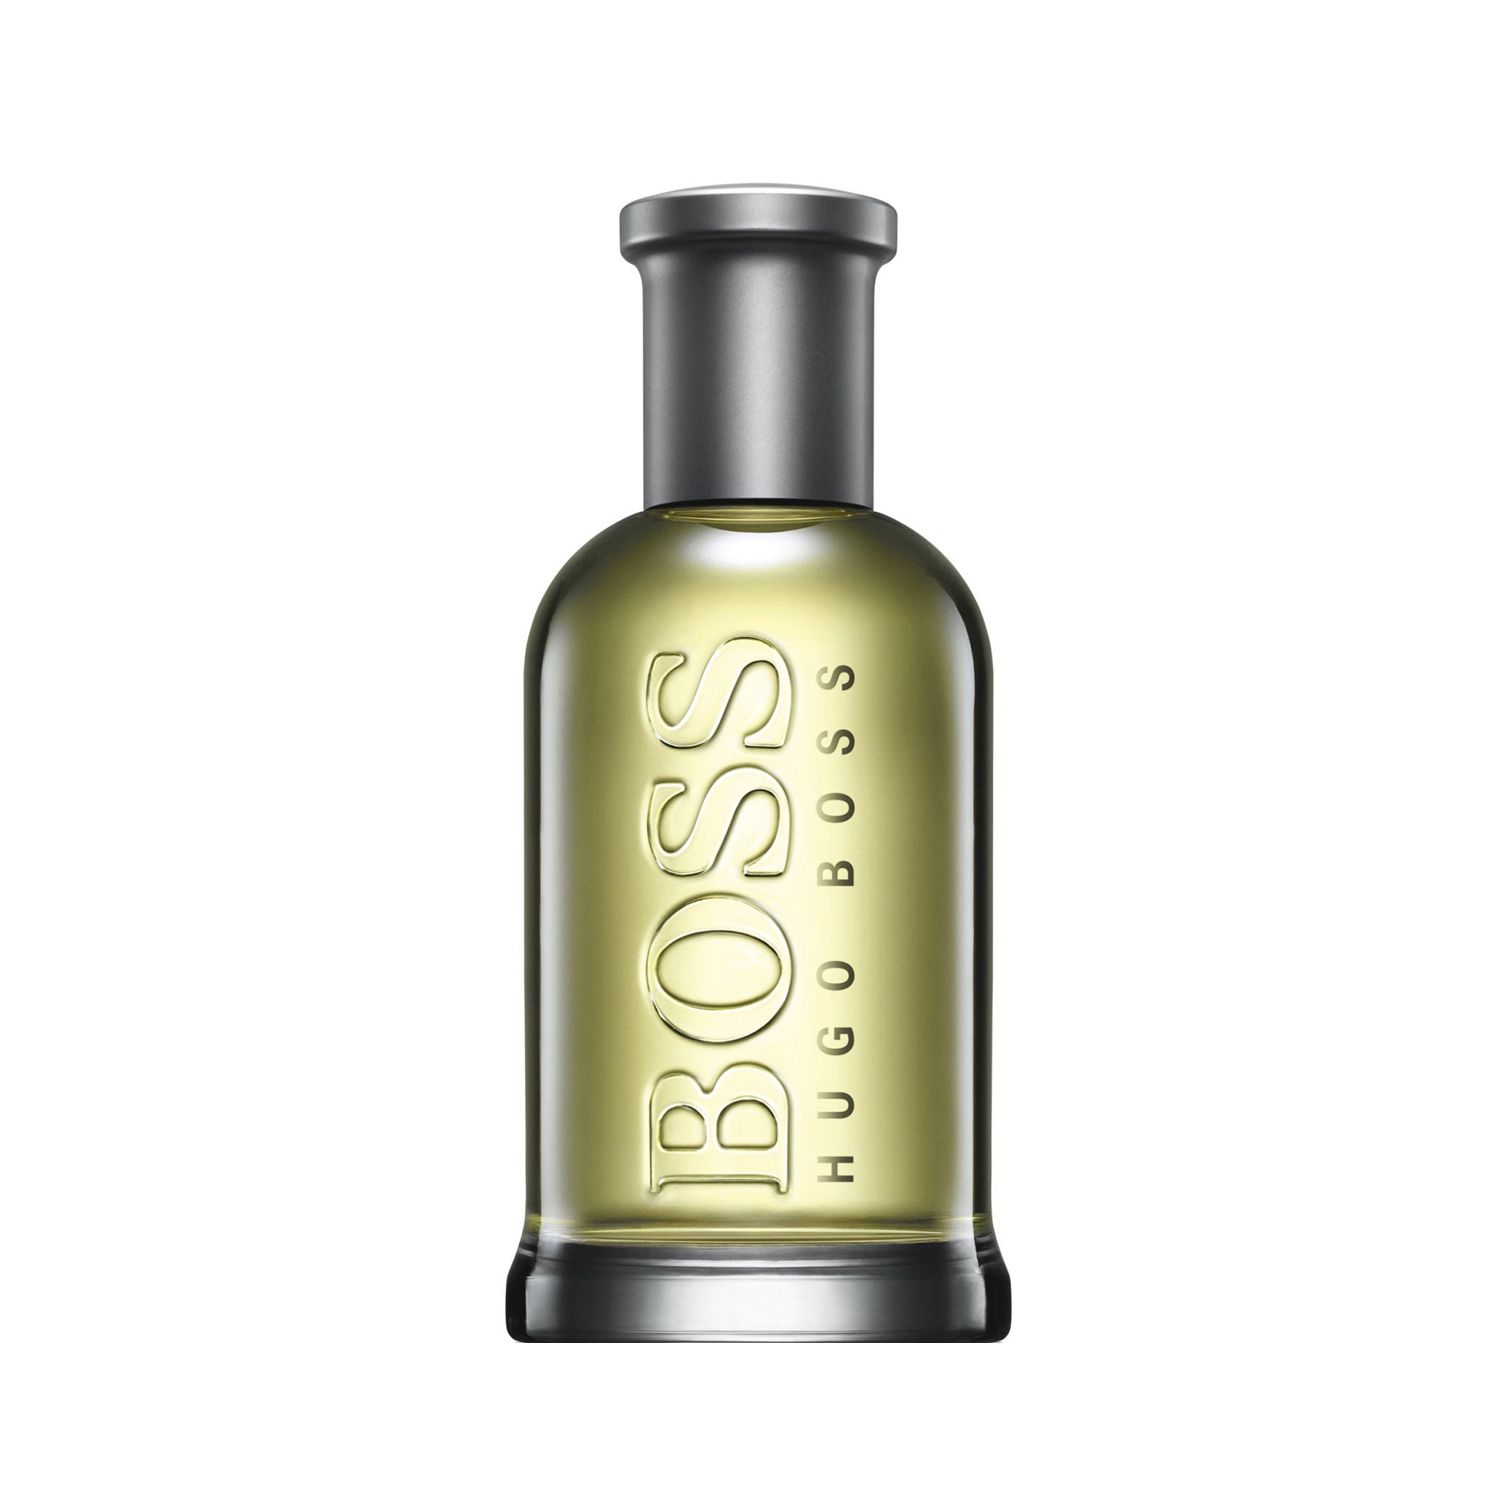 ادو تویلت مردانه هوگو باس مدل Boss Bottled حجم 200 میلی لیتر